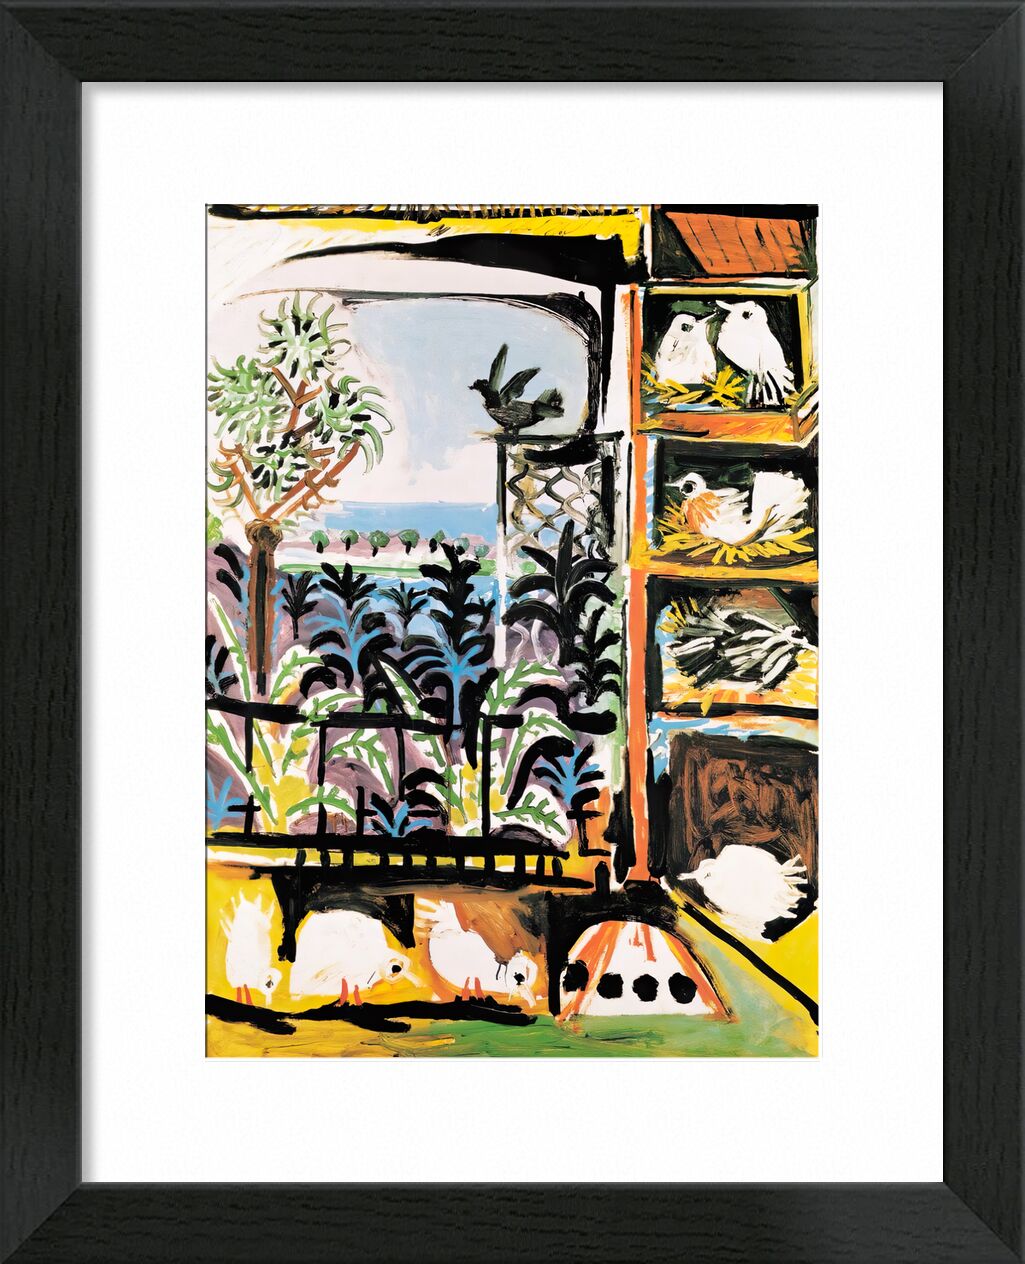 The Pigeons 1957 - Picasso von Bildende Kunst, Prodi Art, Sommer-, Sand, Meer, Tauben, Malerei, Picasso